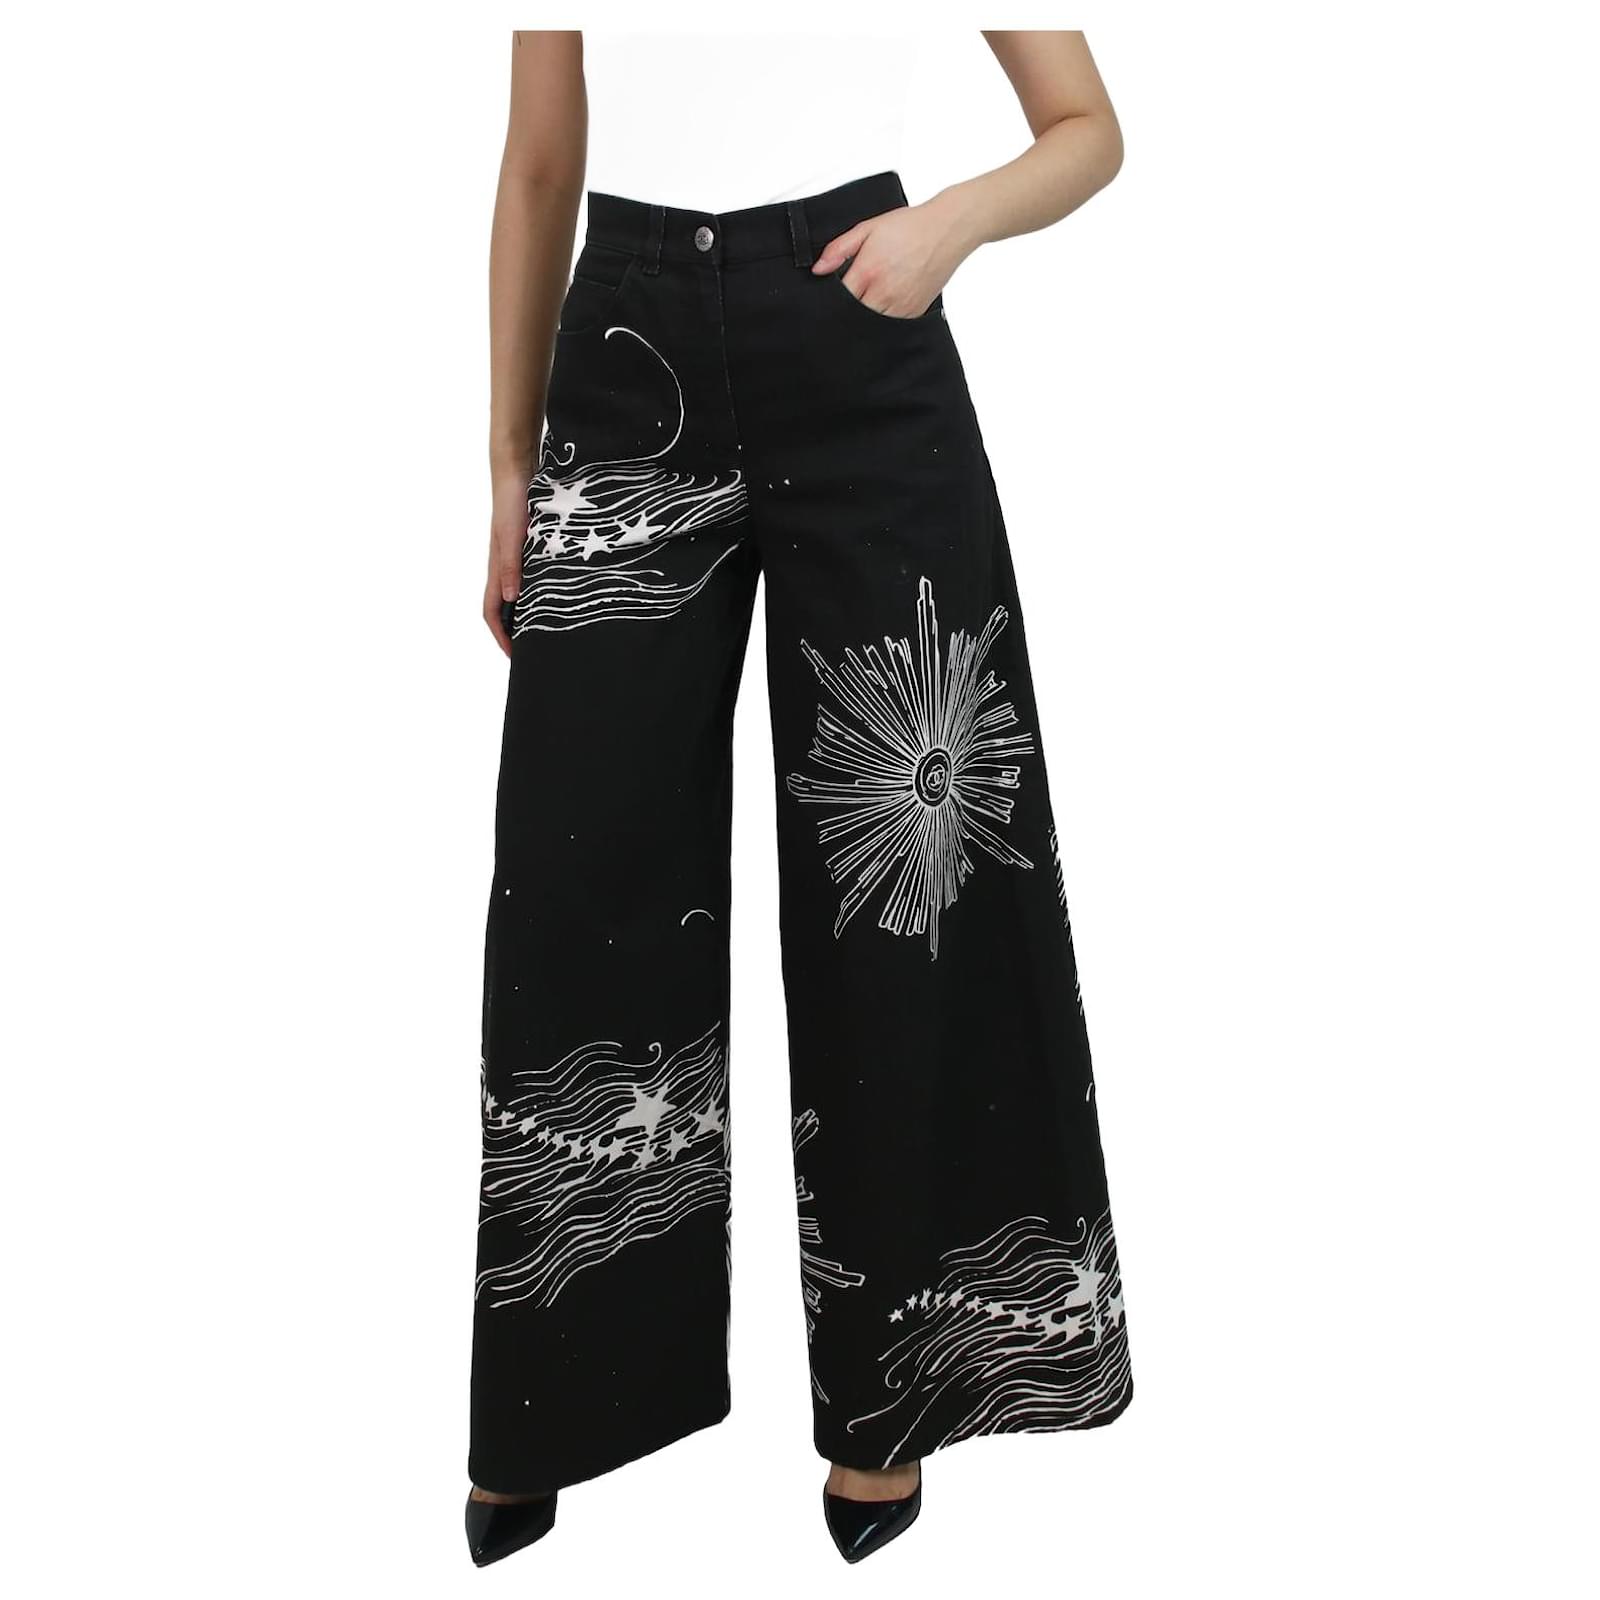 Huaai Women's Solid Color Low Waist Ladder Cutout Textured Flare Long Pants  Plus Size Pants For Women Black M - Walmart.com